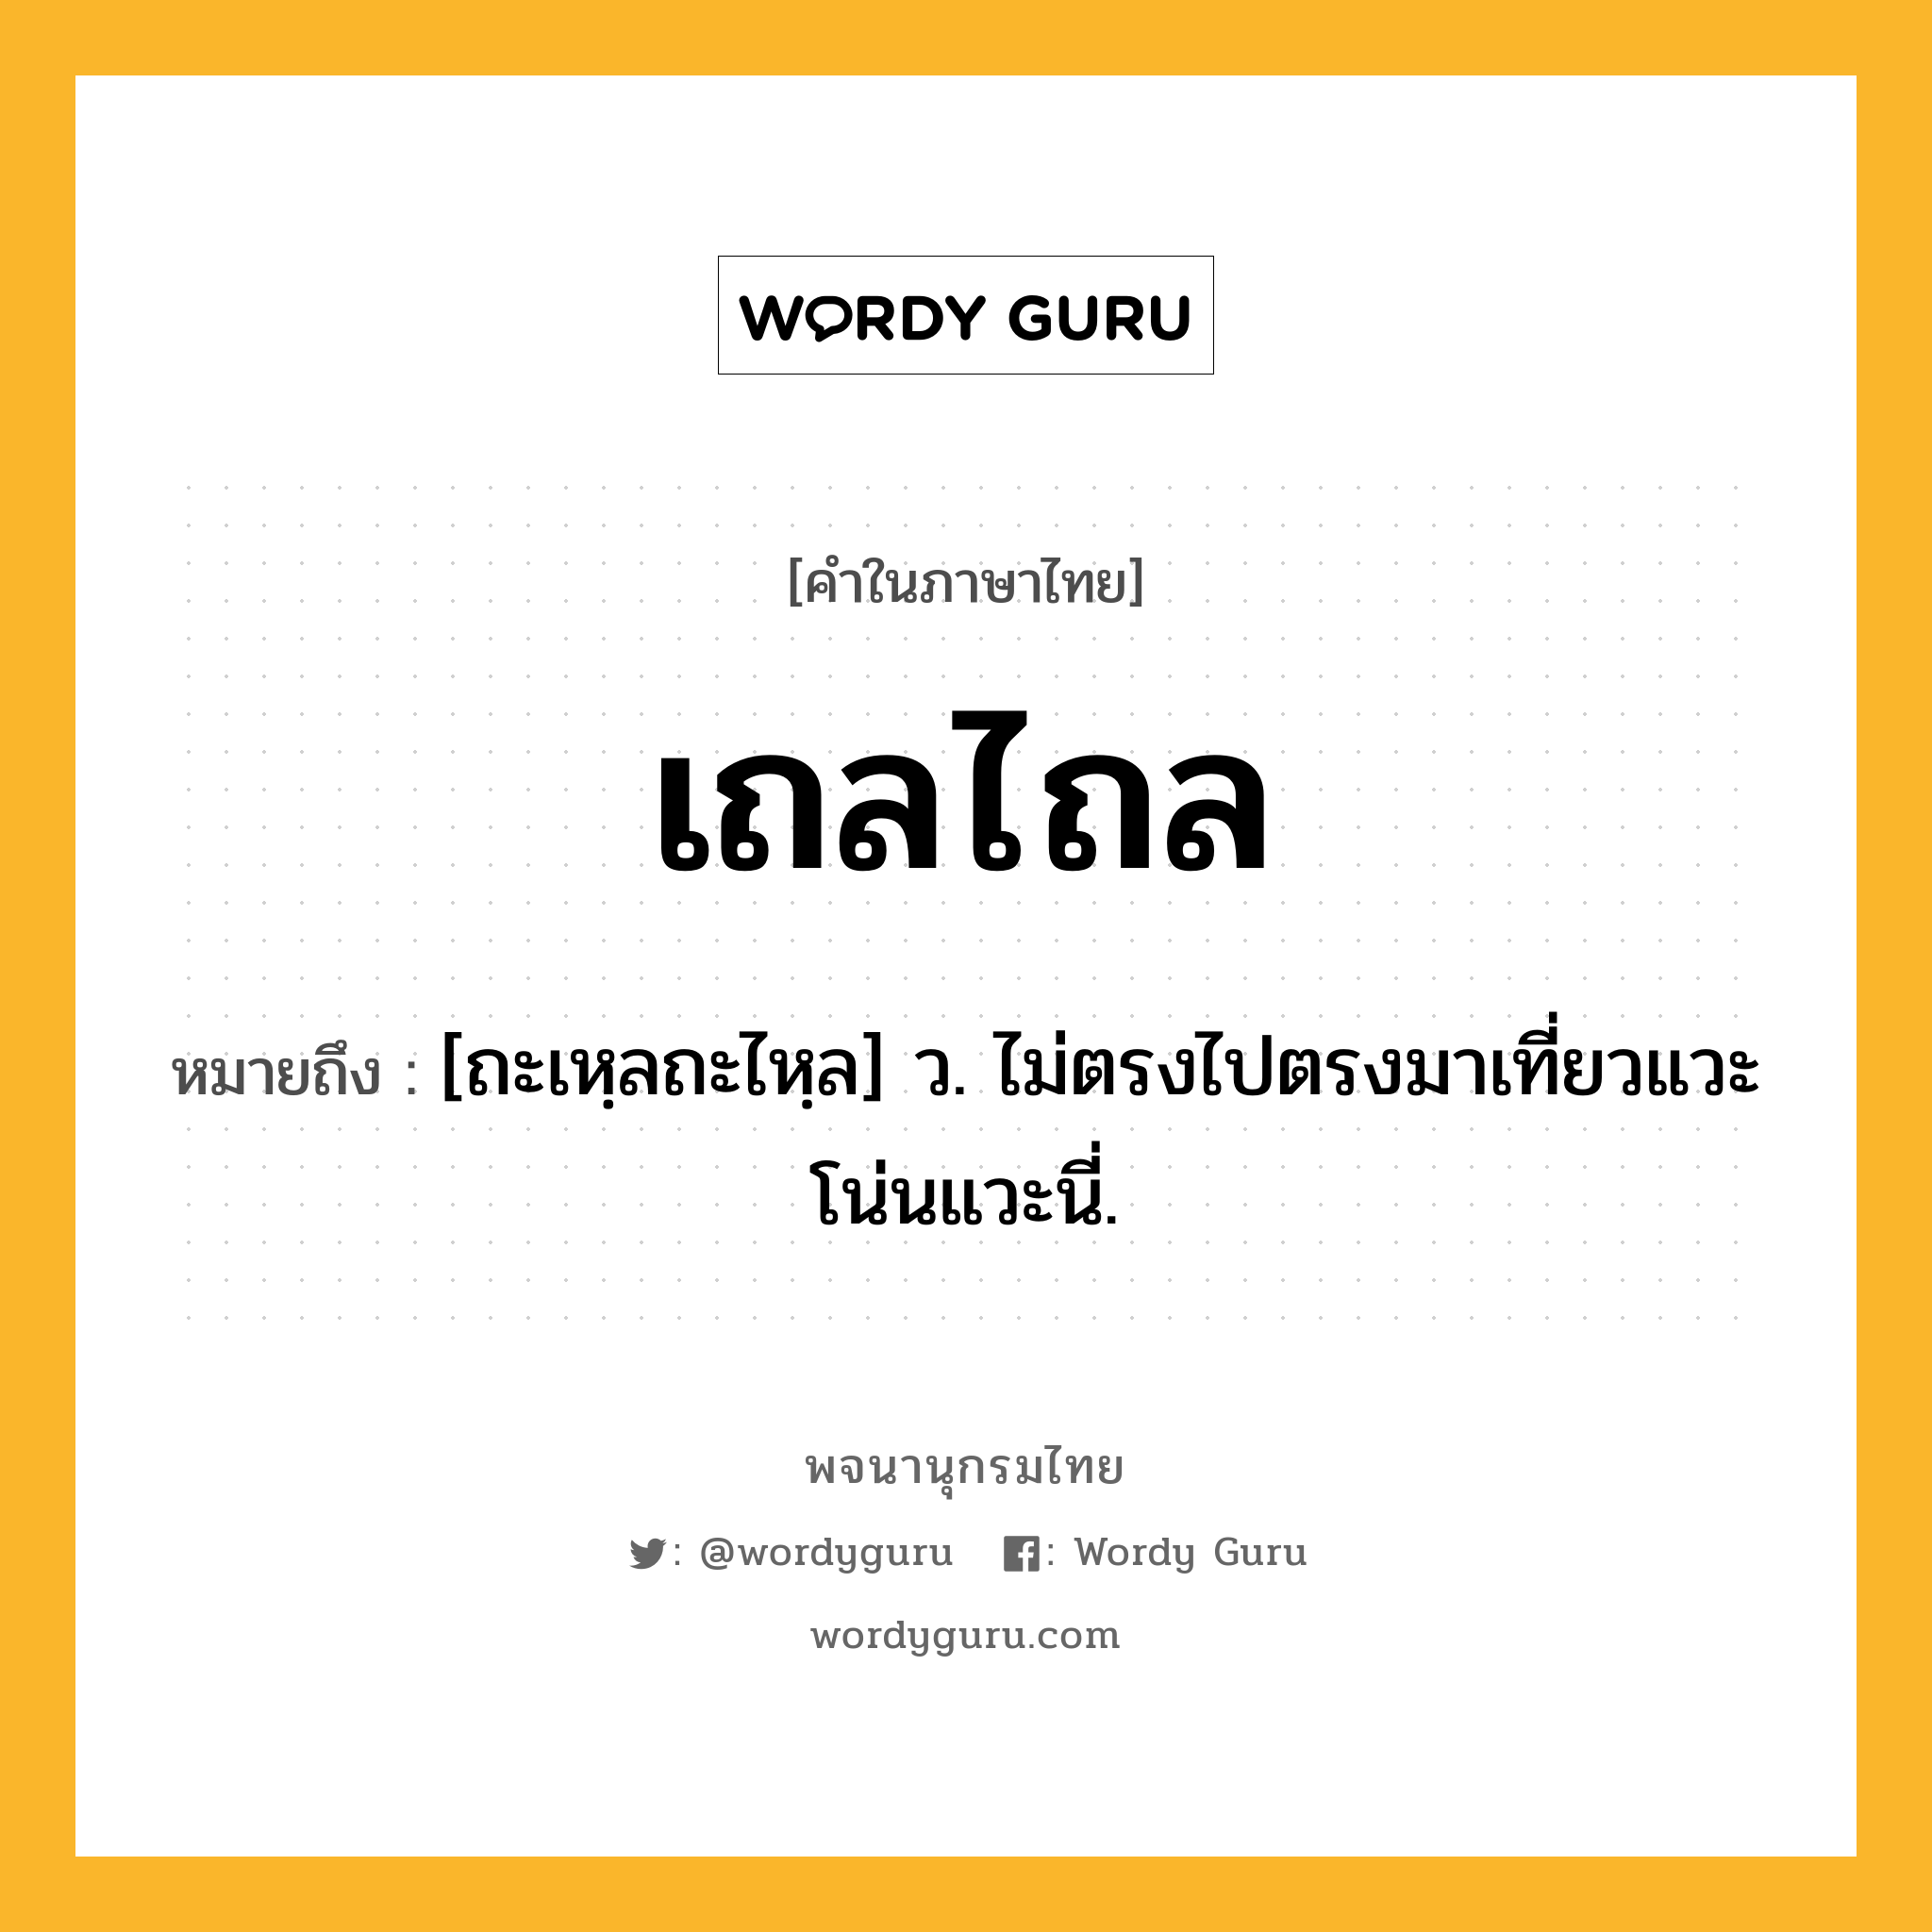 เถลไถล ความหมาย หมายถึงอะไร?, คำในภาษาไทย เถลไถล หมายถึง [ถะเหฺลถะไหฺล] ว. ไม่ตรงไปตรงมาเที่ยวแวะโน่นแวะนี่.